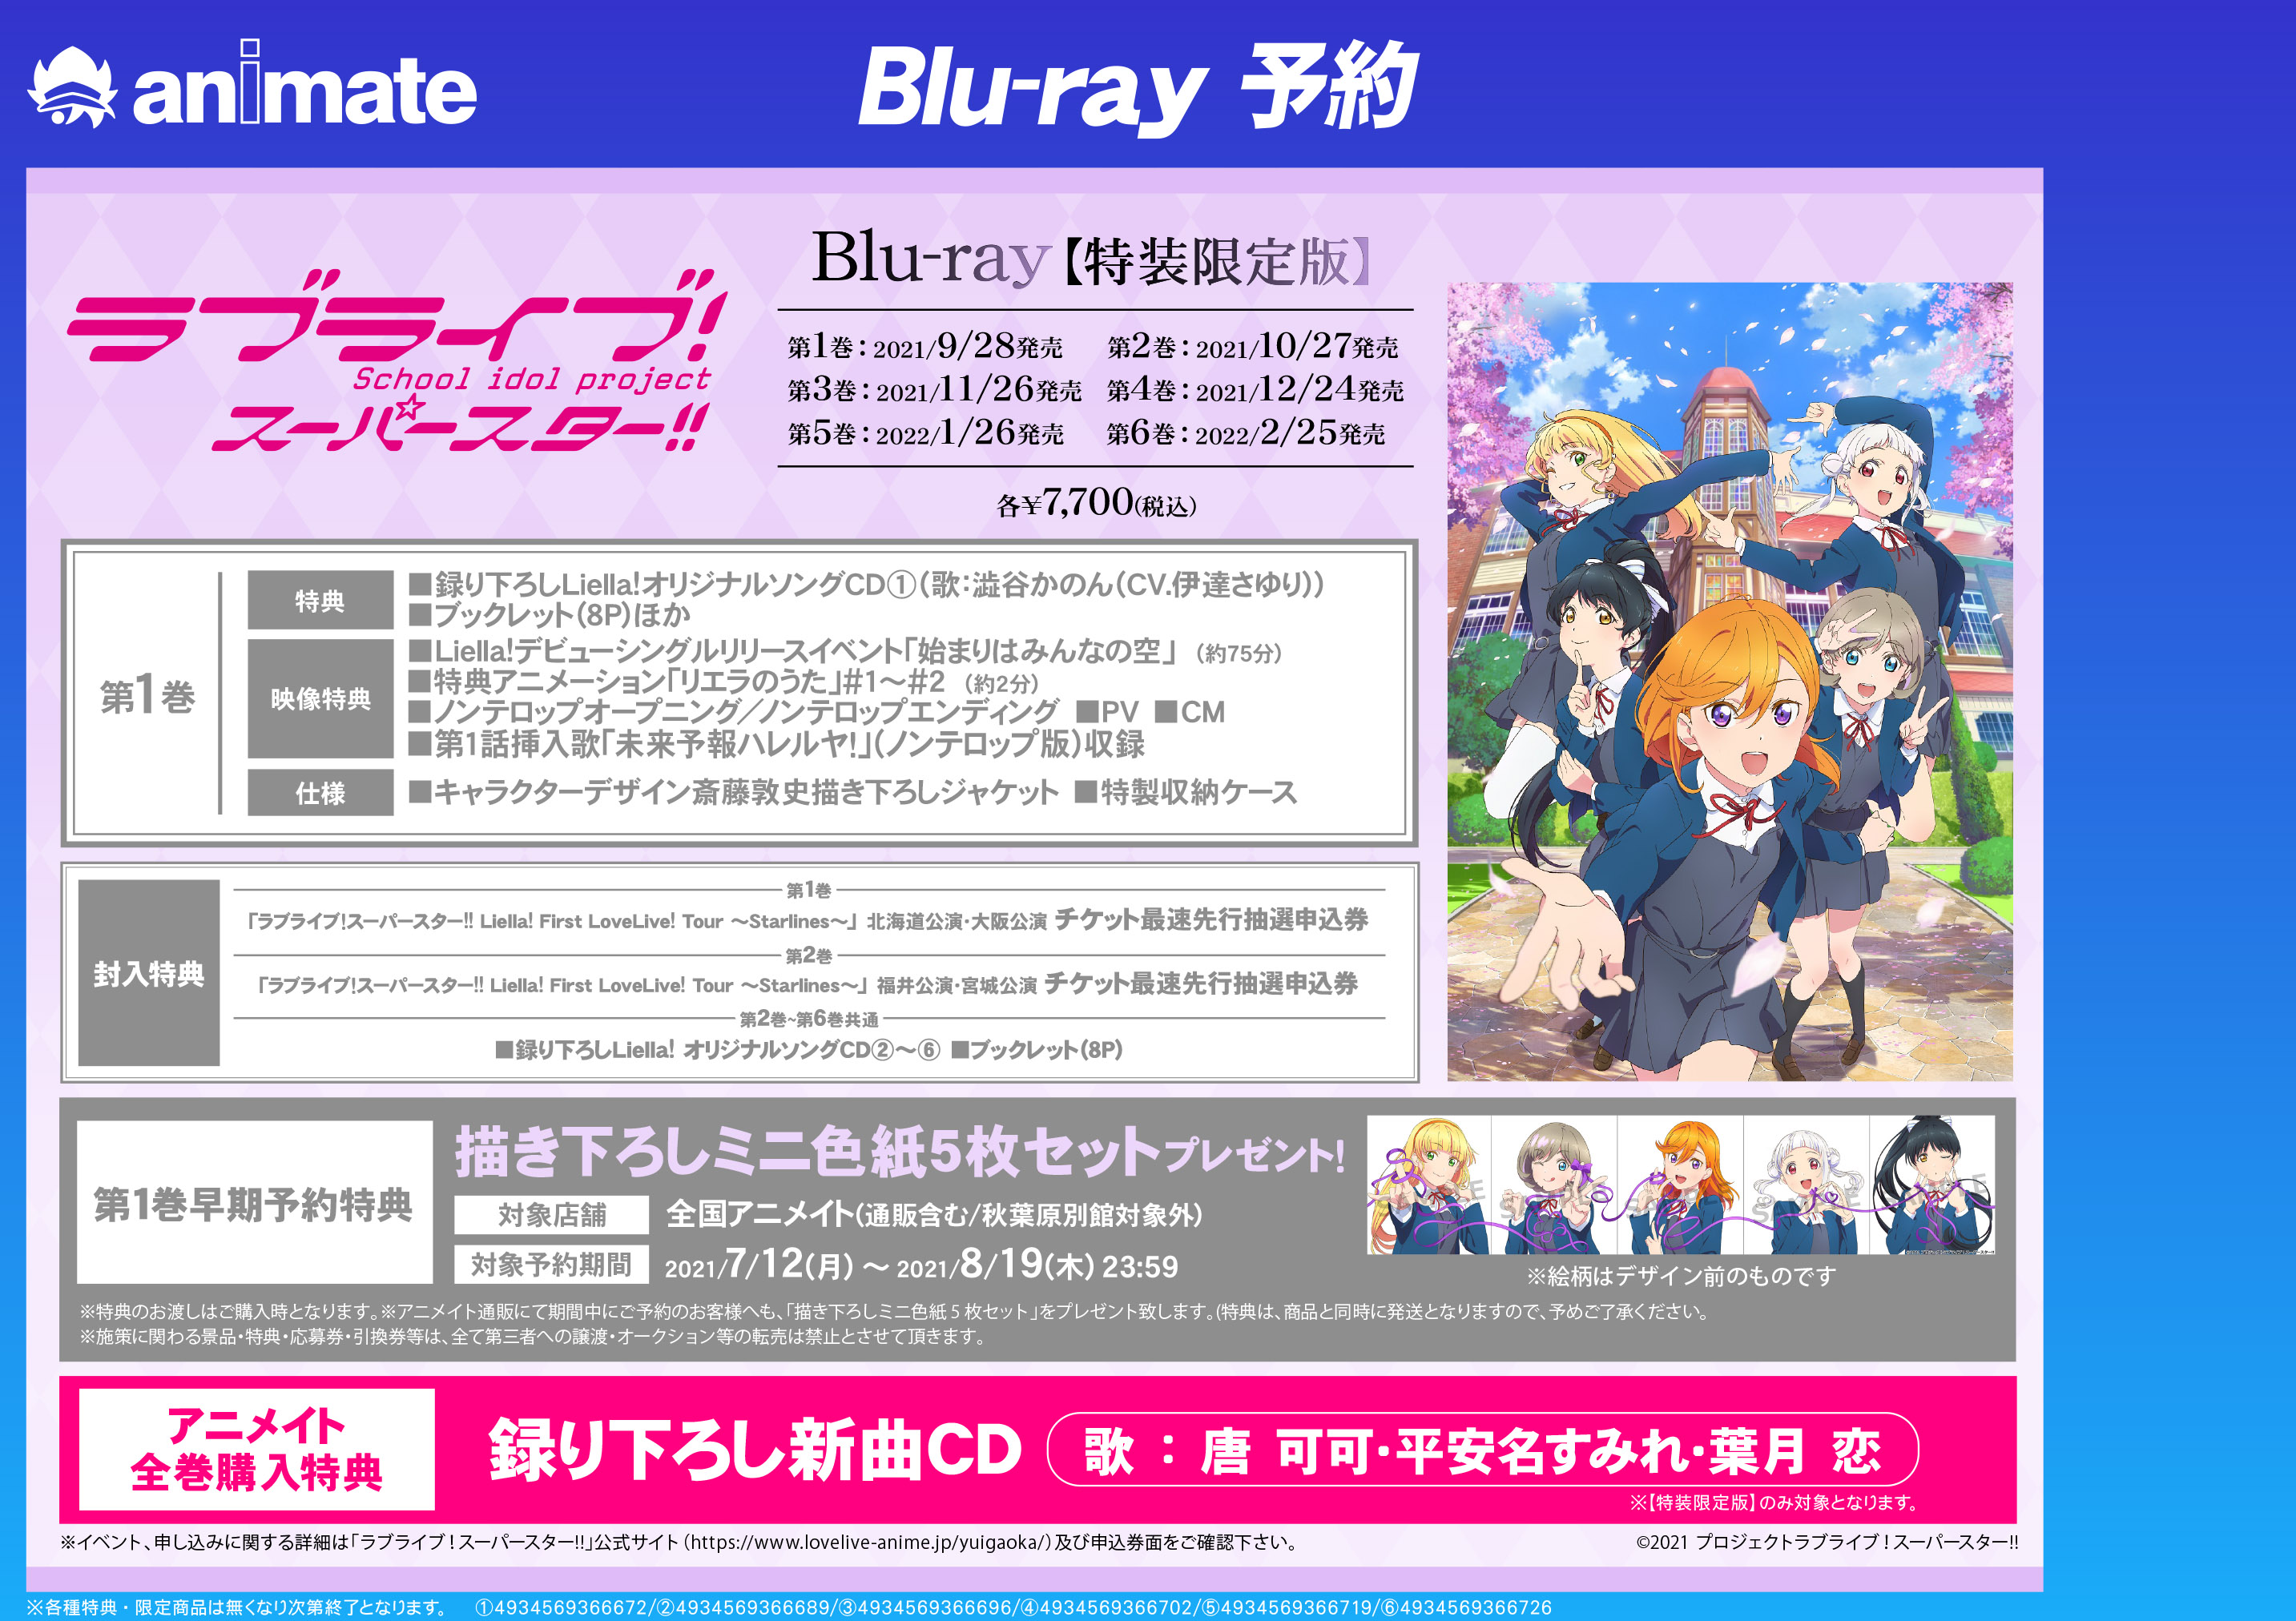 ラブライブスーパースター Blu-ray全巻アニメイト特典CD付き - rehda.com